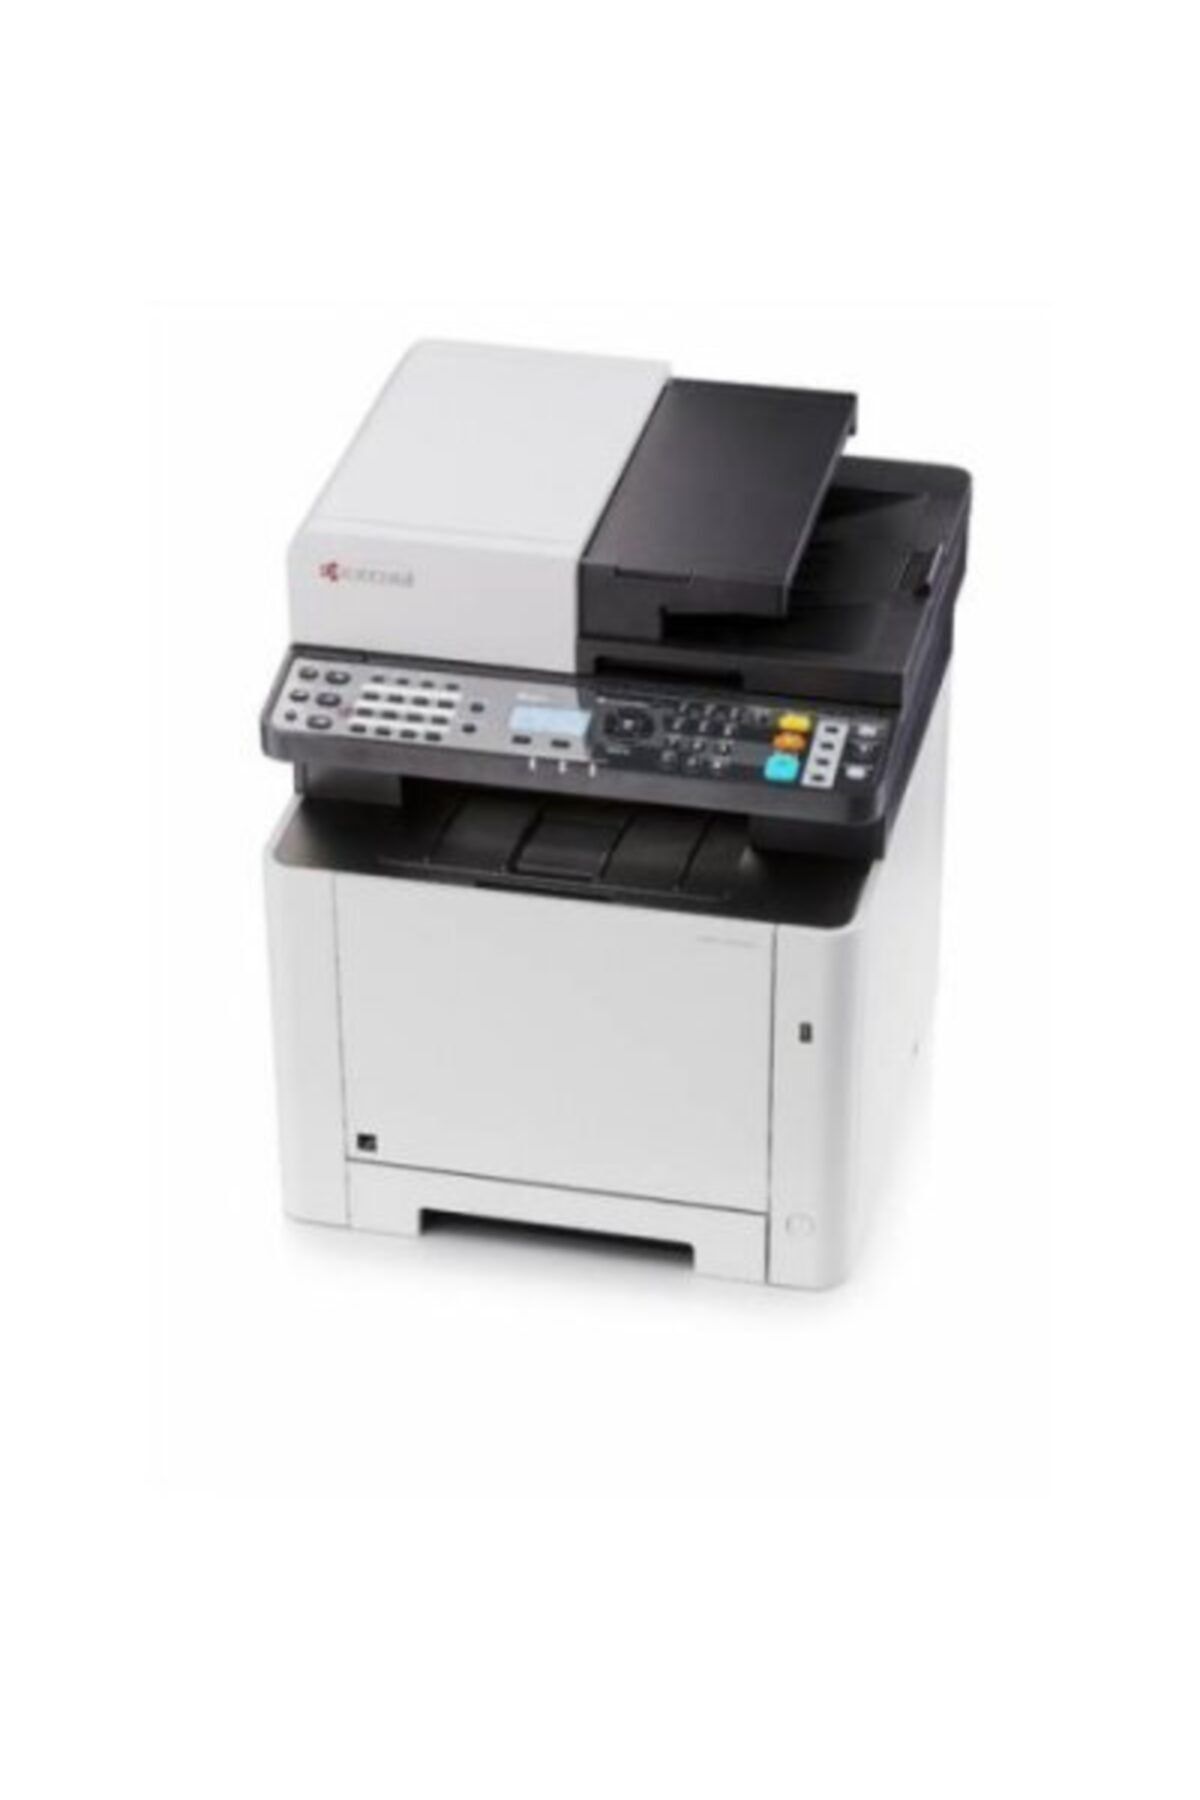 KYOCERA Ecosys M5521cdw Renkli Lazer Yazıcı-tarayıcı-fotokopi-fax